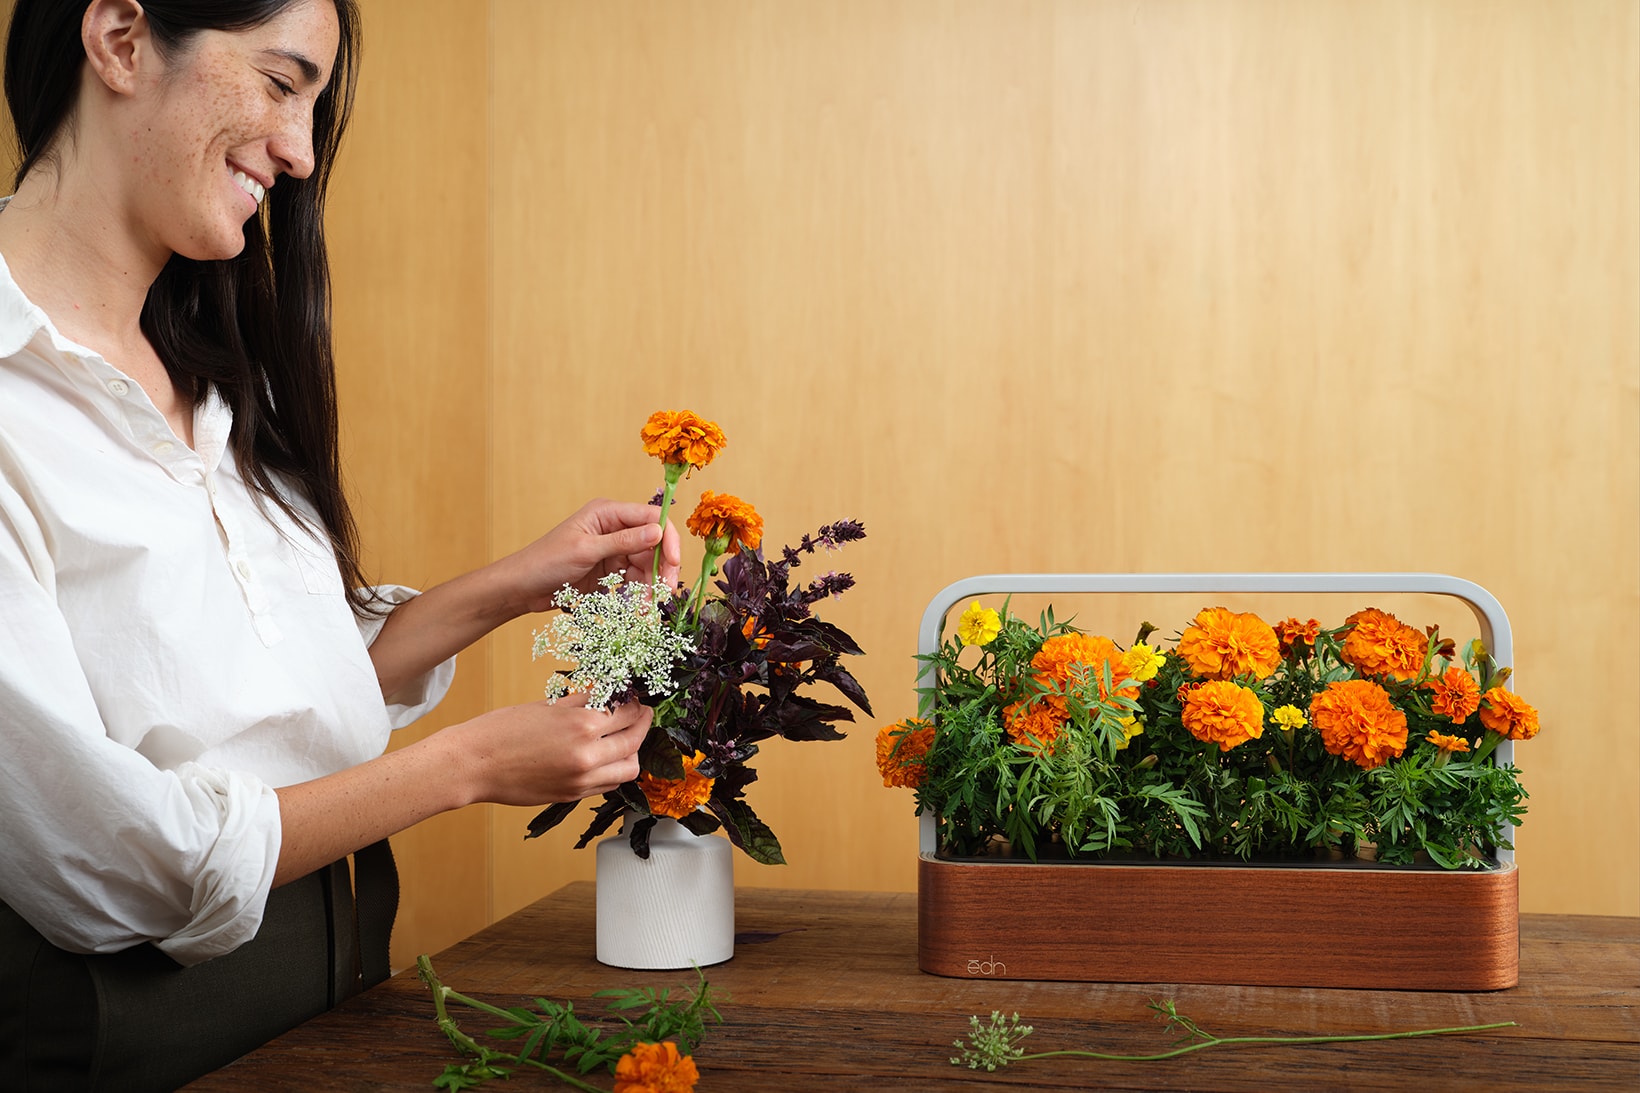 ēdn SmallGarden Indoor Garden Plants Herbs Vegetables Home Smart App Phone